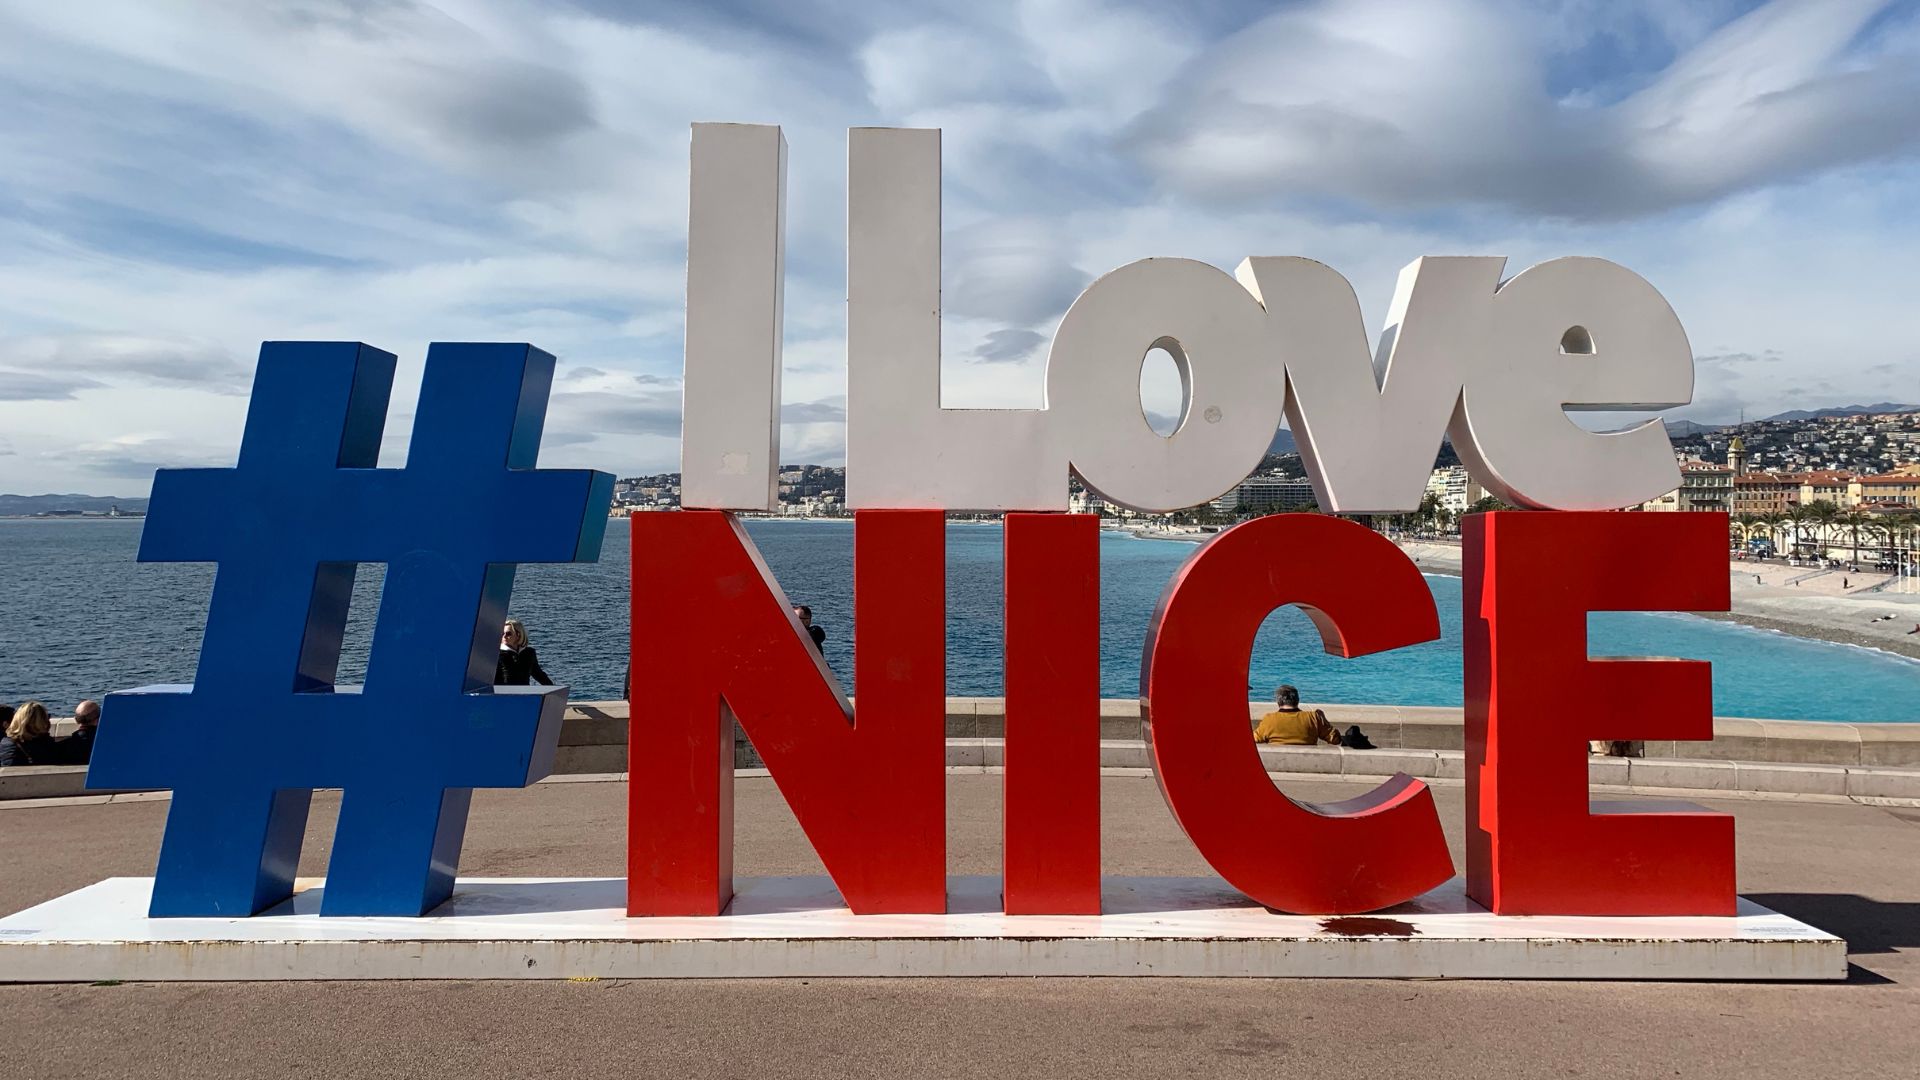 "I love Nice"